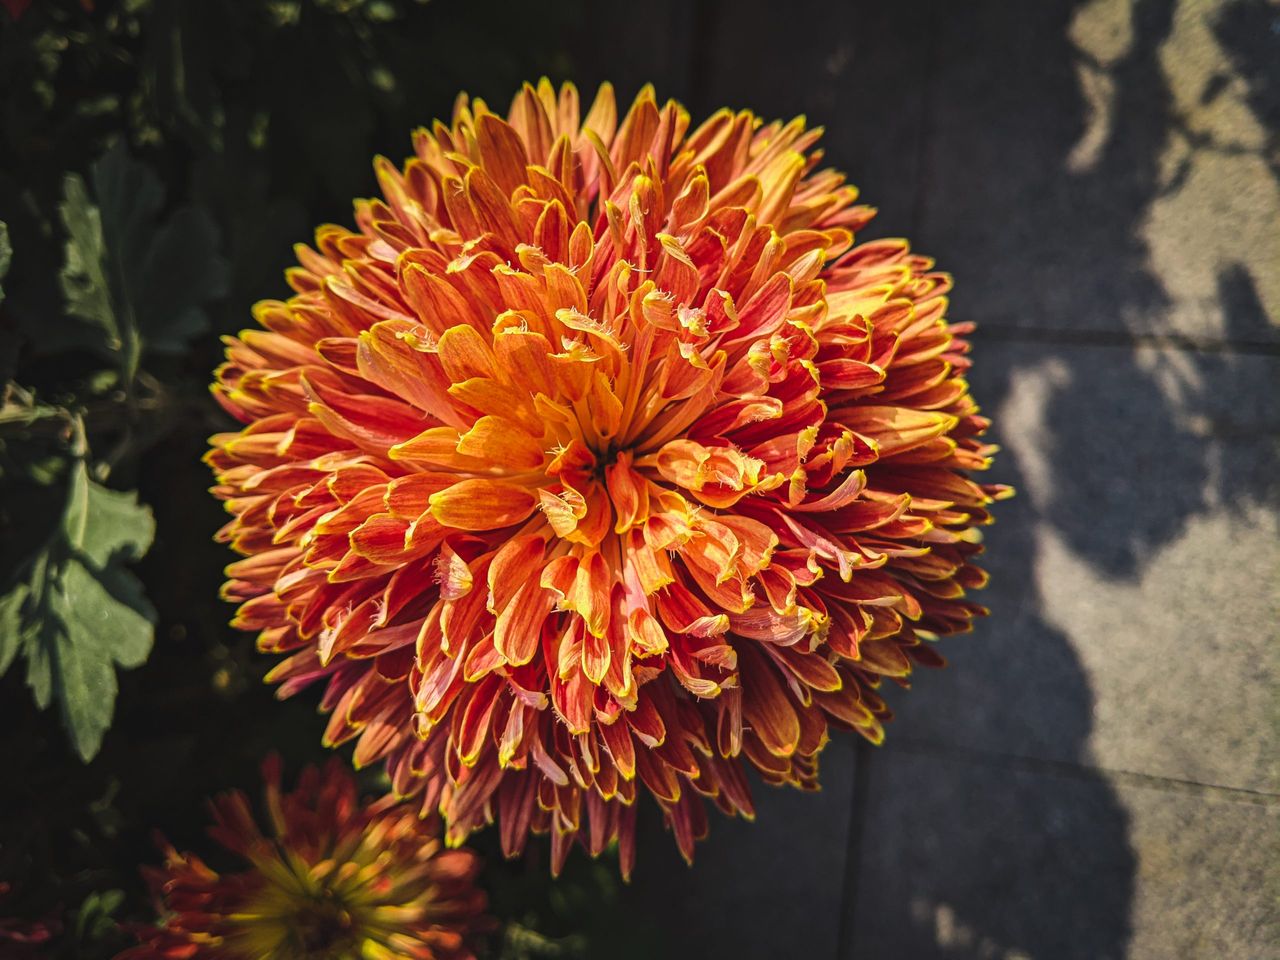 A vertical closeup shot of an aster flower in a garden